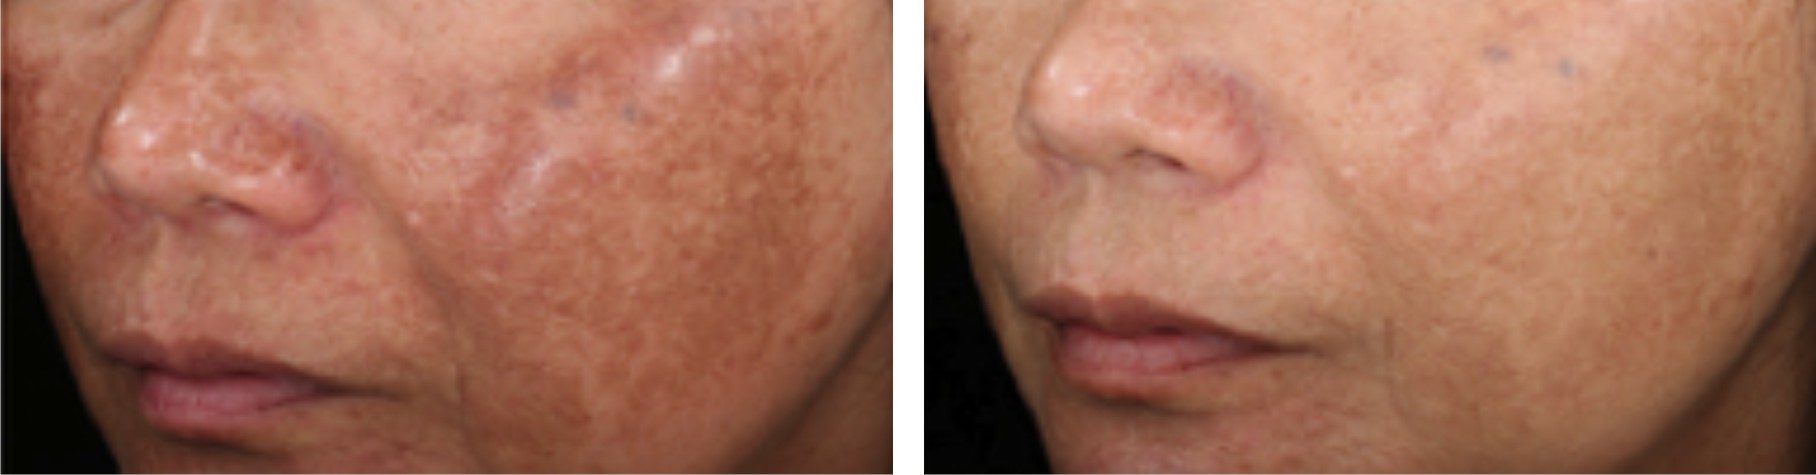 Laser Skin Whitening Image Two